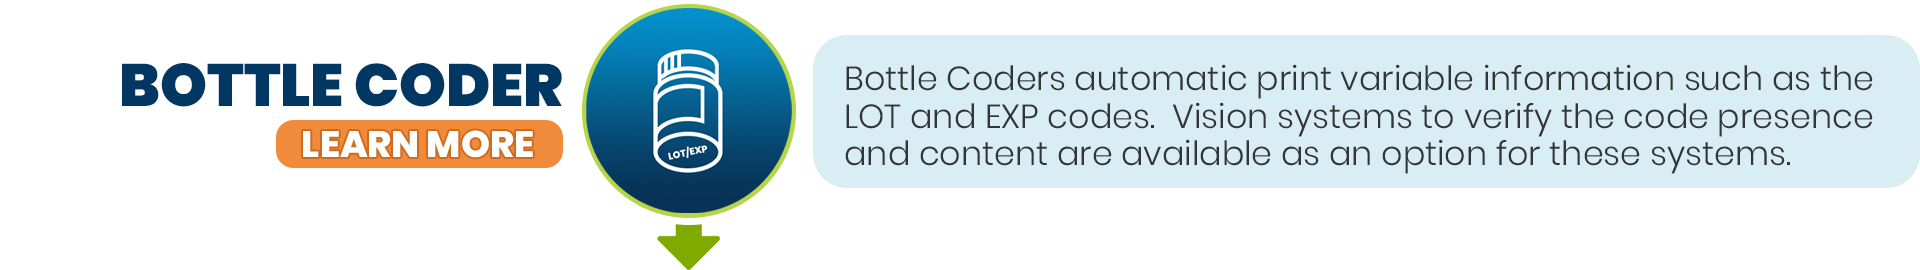 Bottle Coder - 60bpm Powder - Block